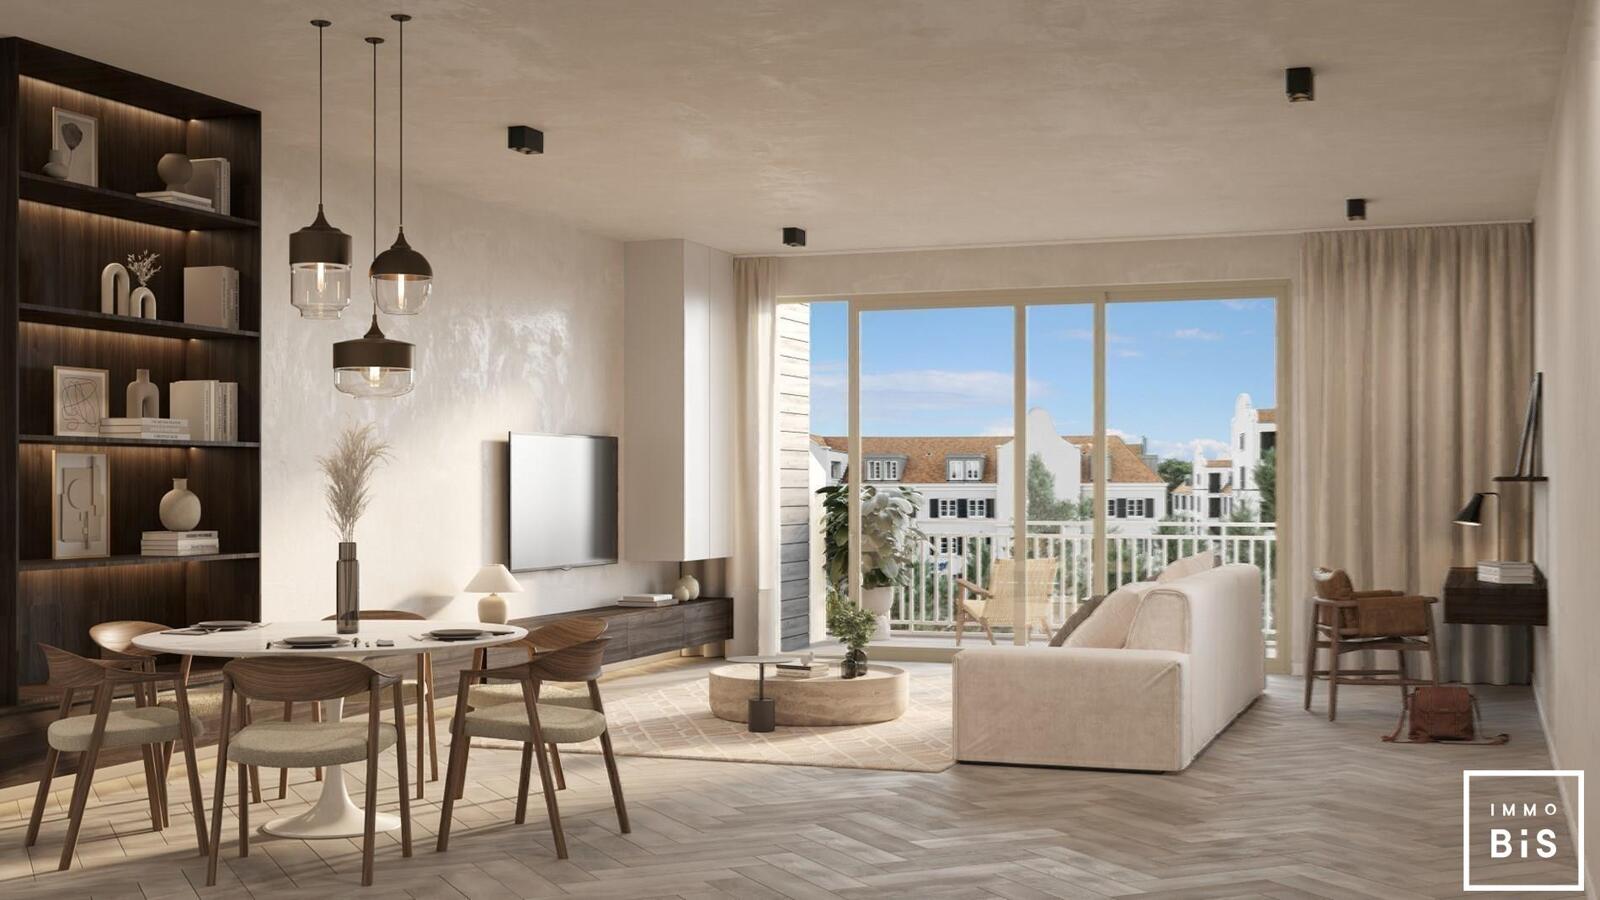 " Appartement villa moderne avec terrasse sur la Digue à Cadzand - Résidence Duinhof-Noord " 22